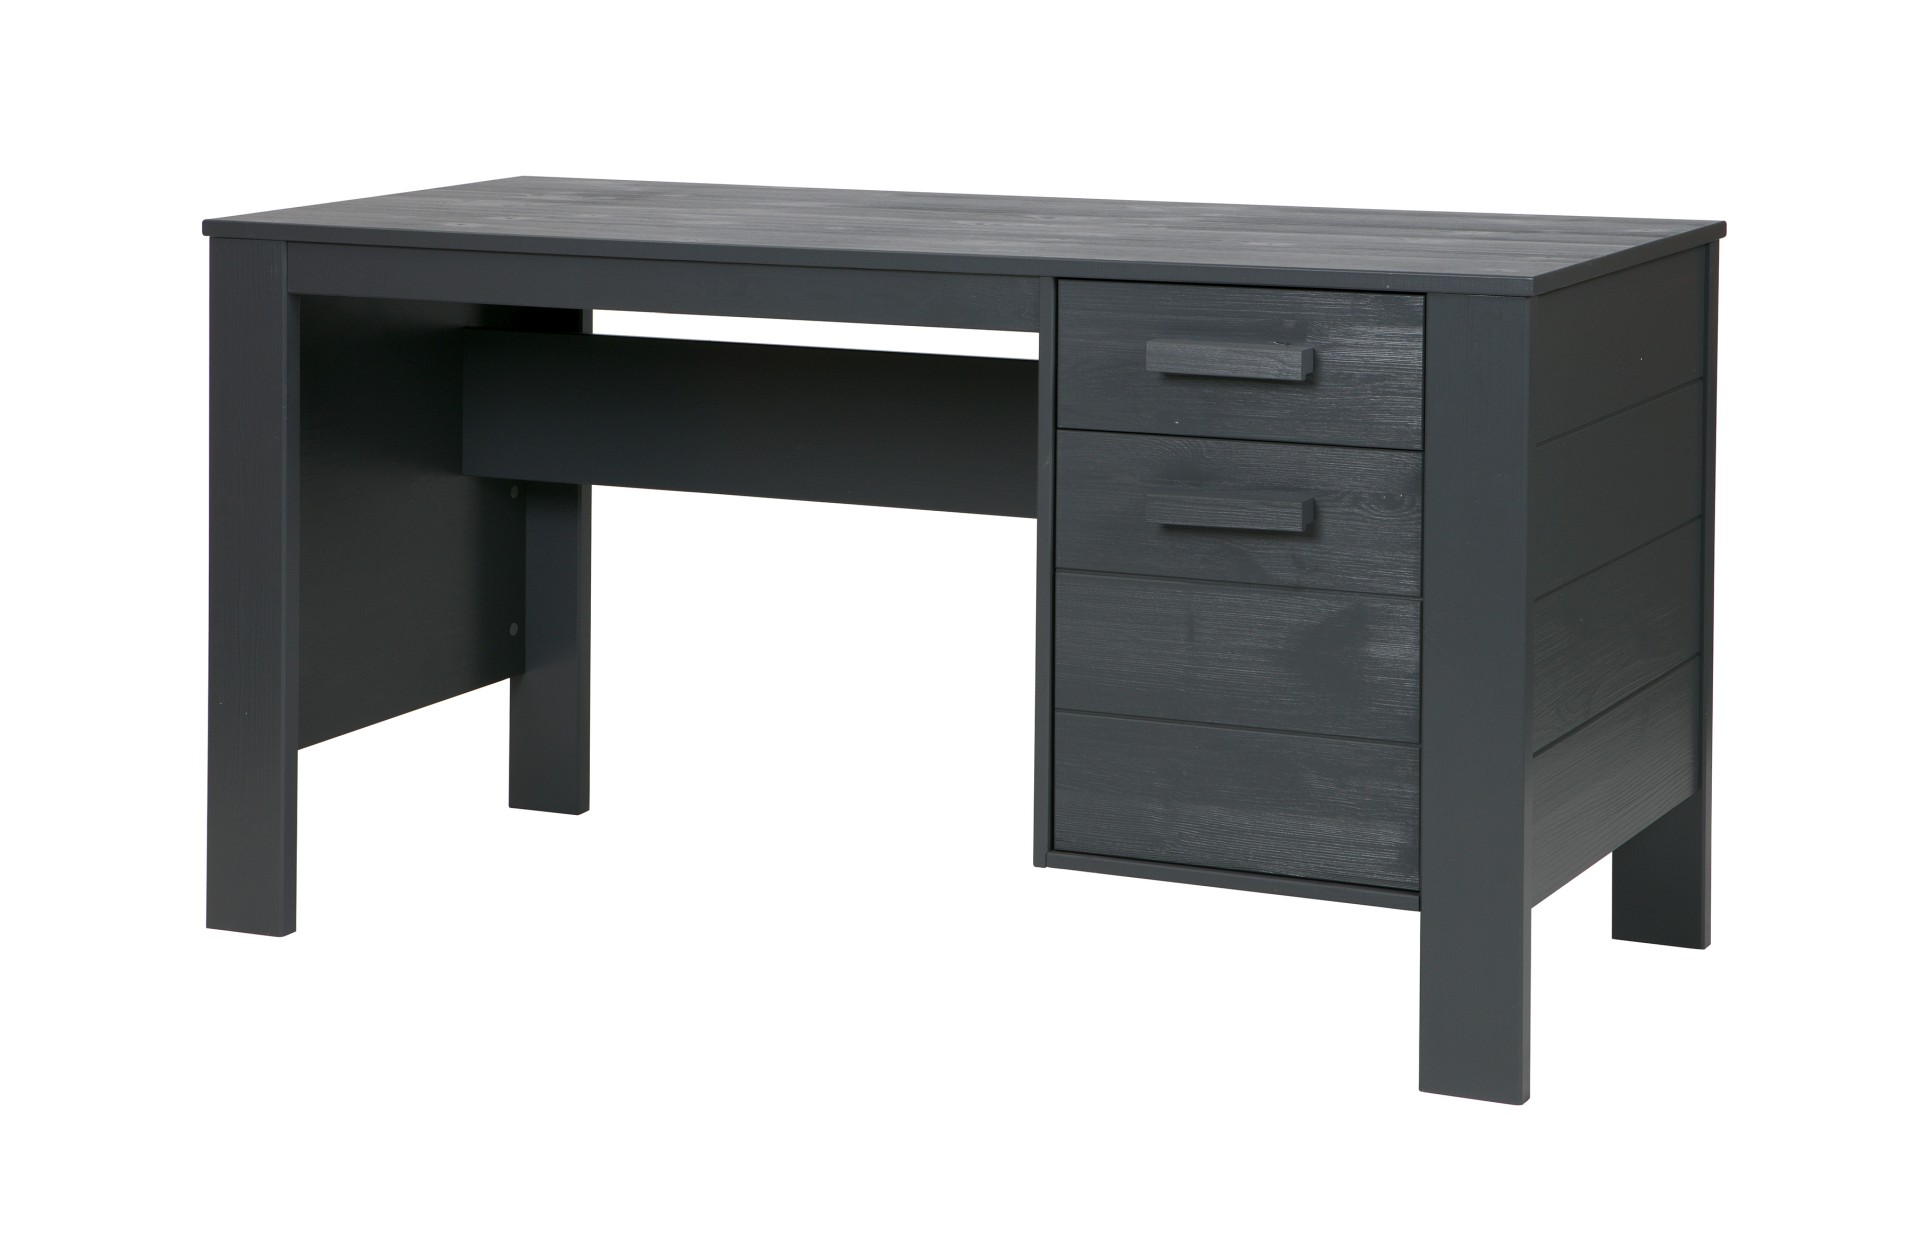 Der Schreibtisch Dennis wurde aus Kiefernholz gefertigt und besitzt einen dunkelgrauen Farbton. Der Tisch verfügt über eine Schublade und eine Tür für Stauraum.